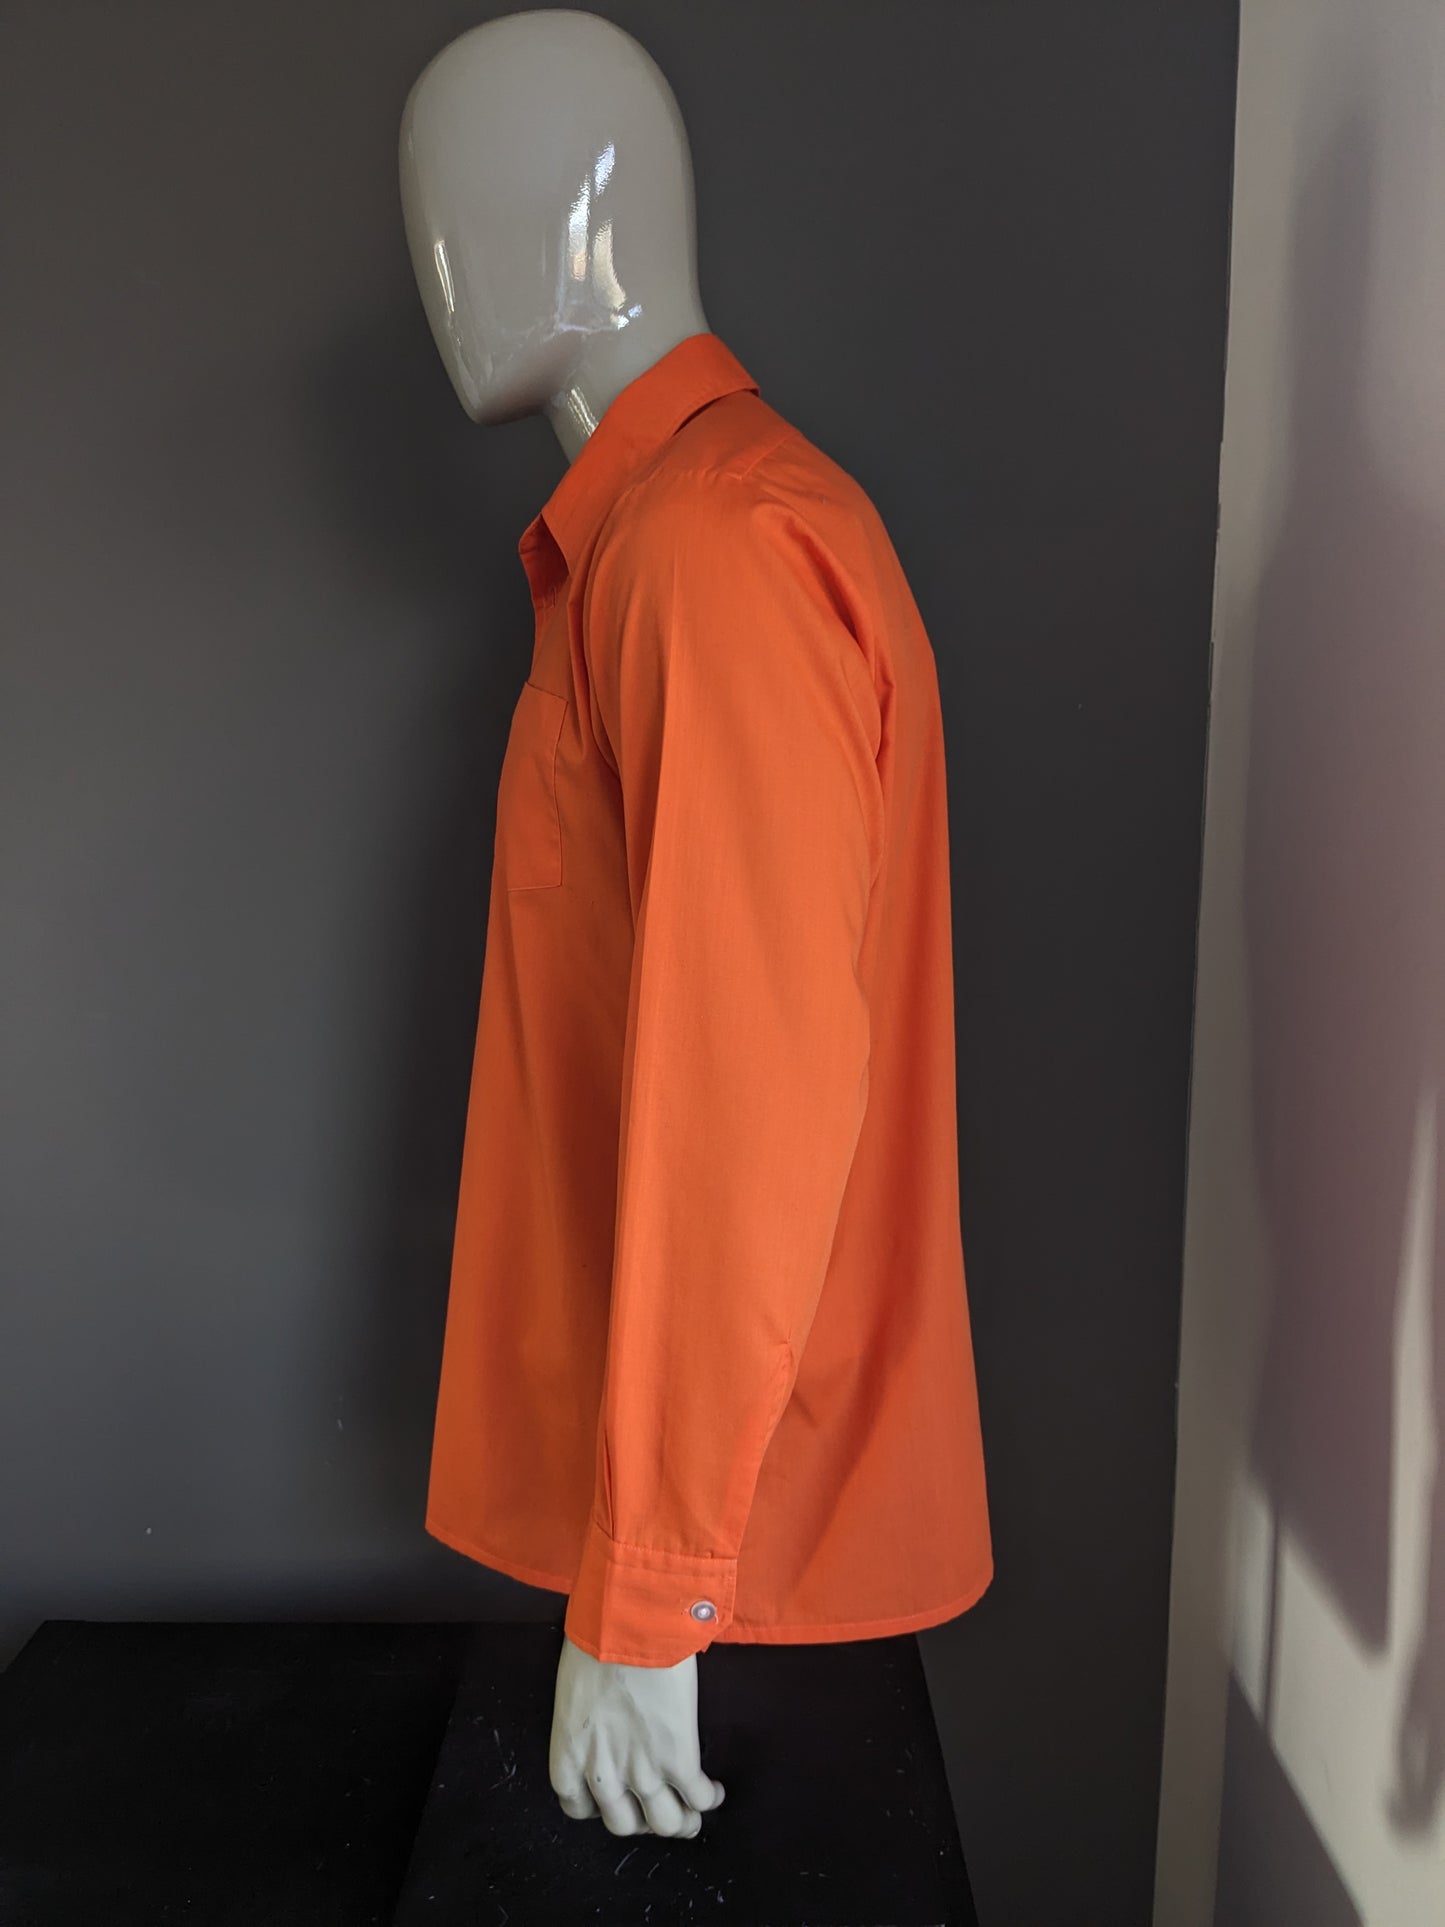 Shirt cupo vintage degli anni '70 con colletto punti. Colorato arancione. Taglia XL.